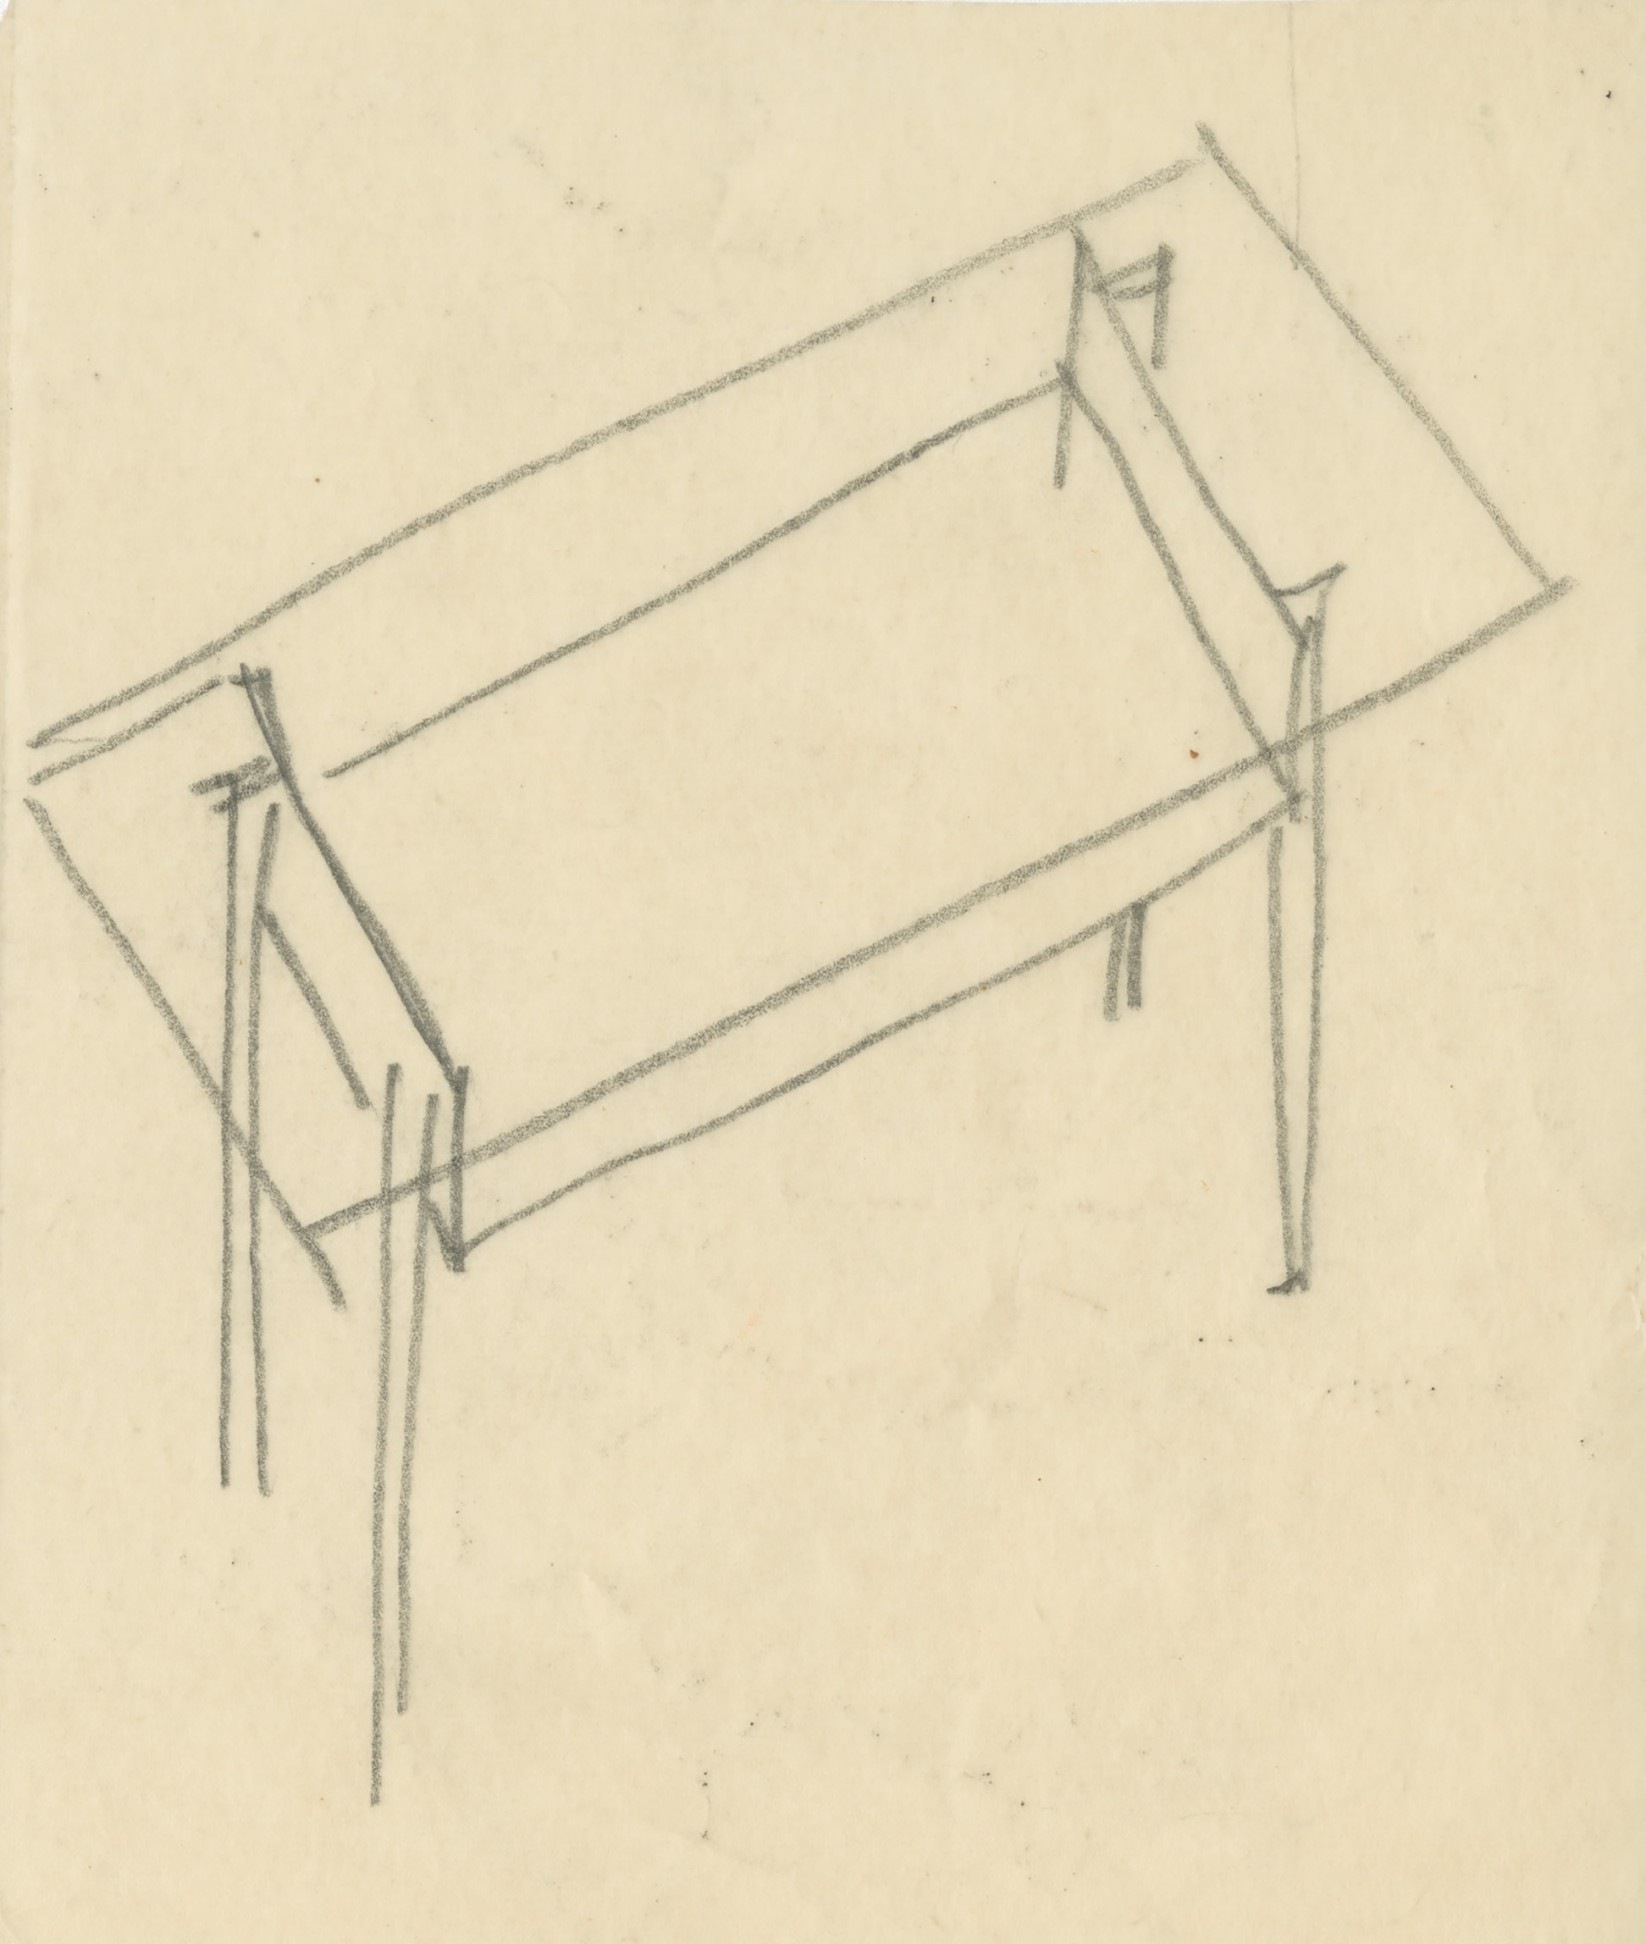 Willy Guhl, Entwurfszeichnung, Storage Units, 1948, Designsammlung, Museum für Gestaltung Zürich